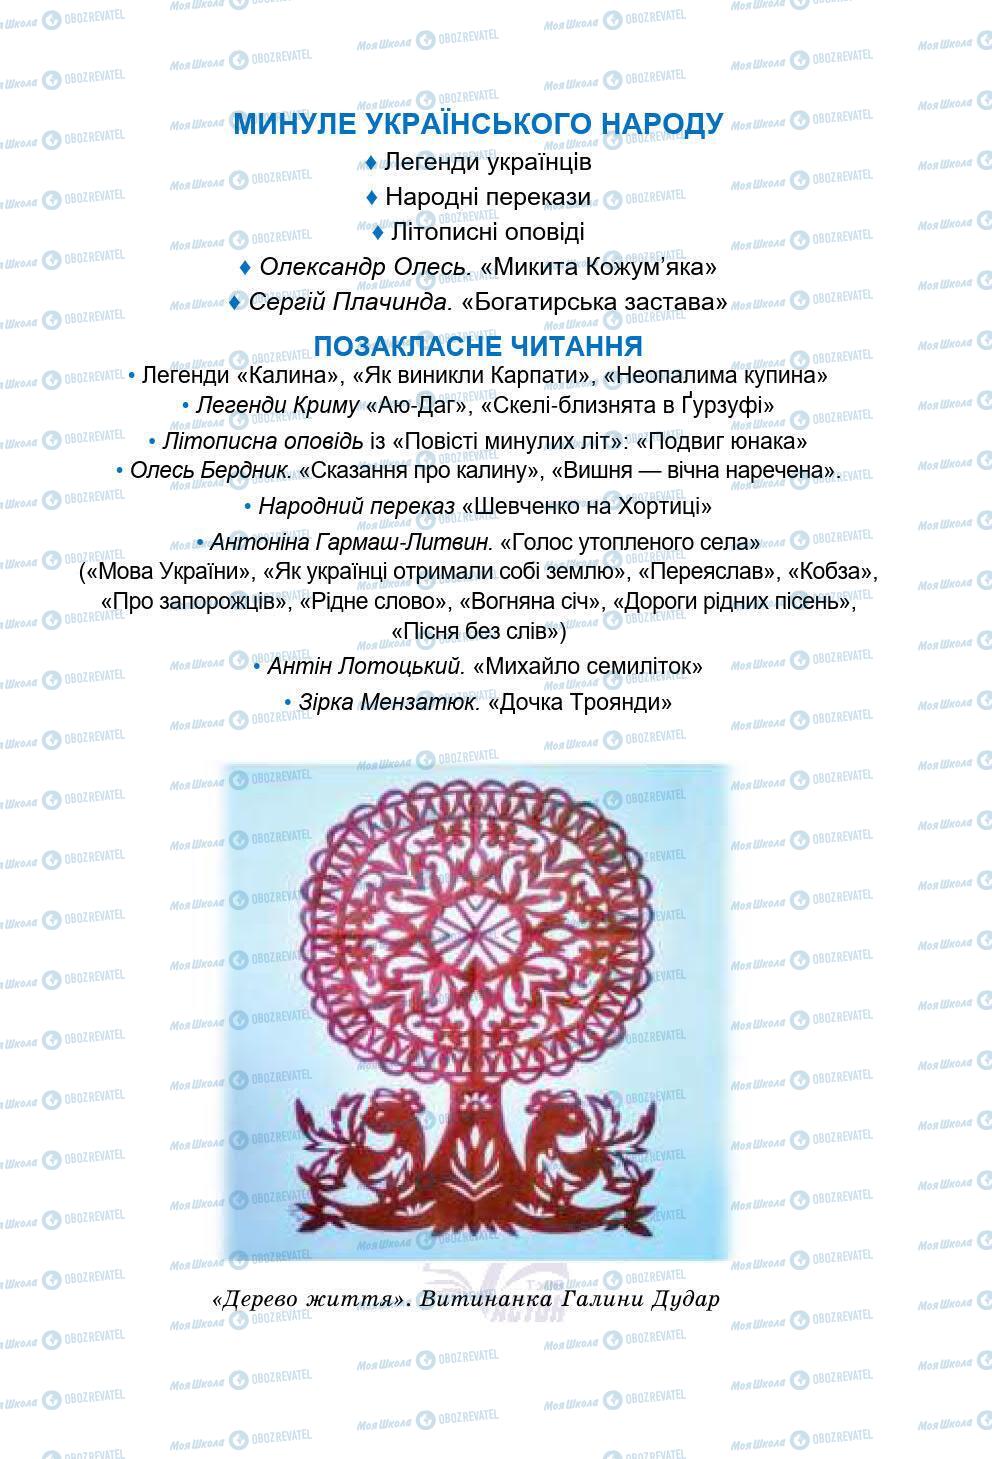 Підручники Українська література 5 клас сторінка 85